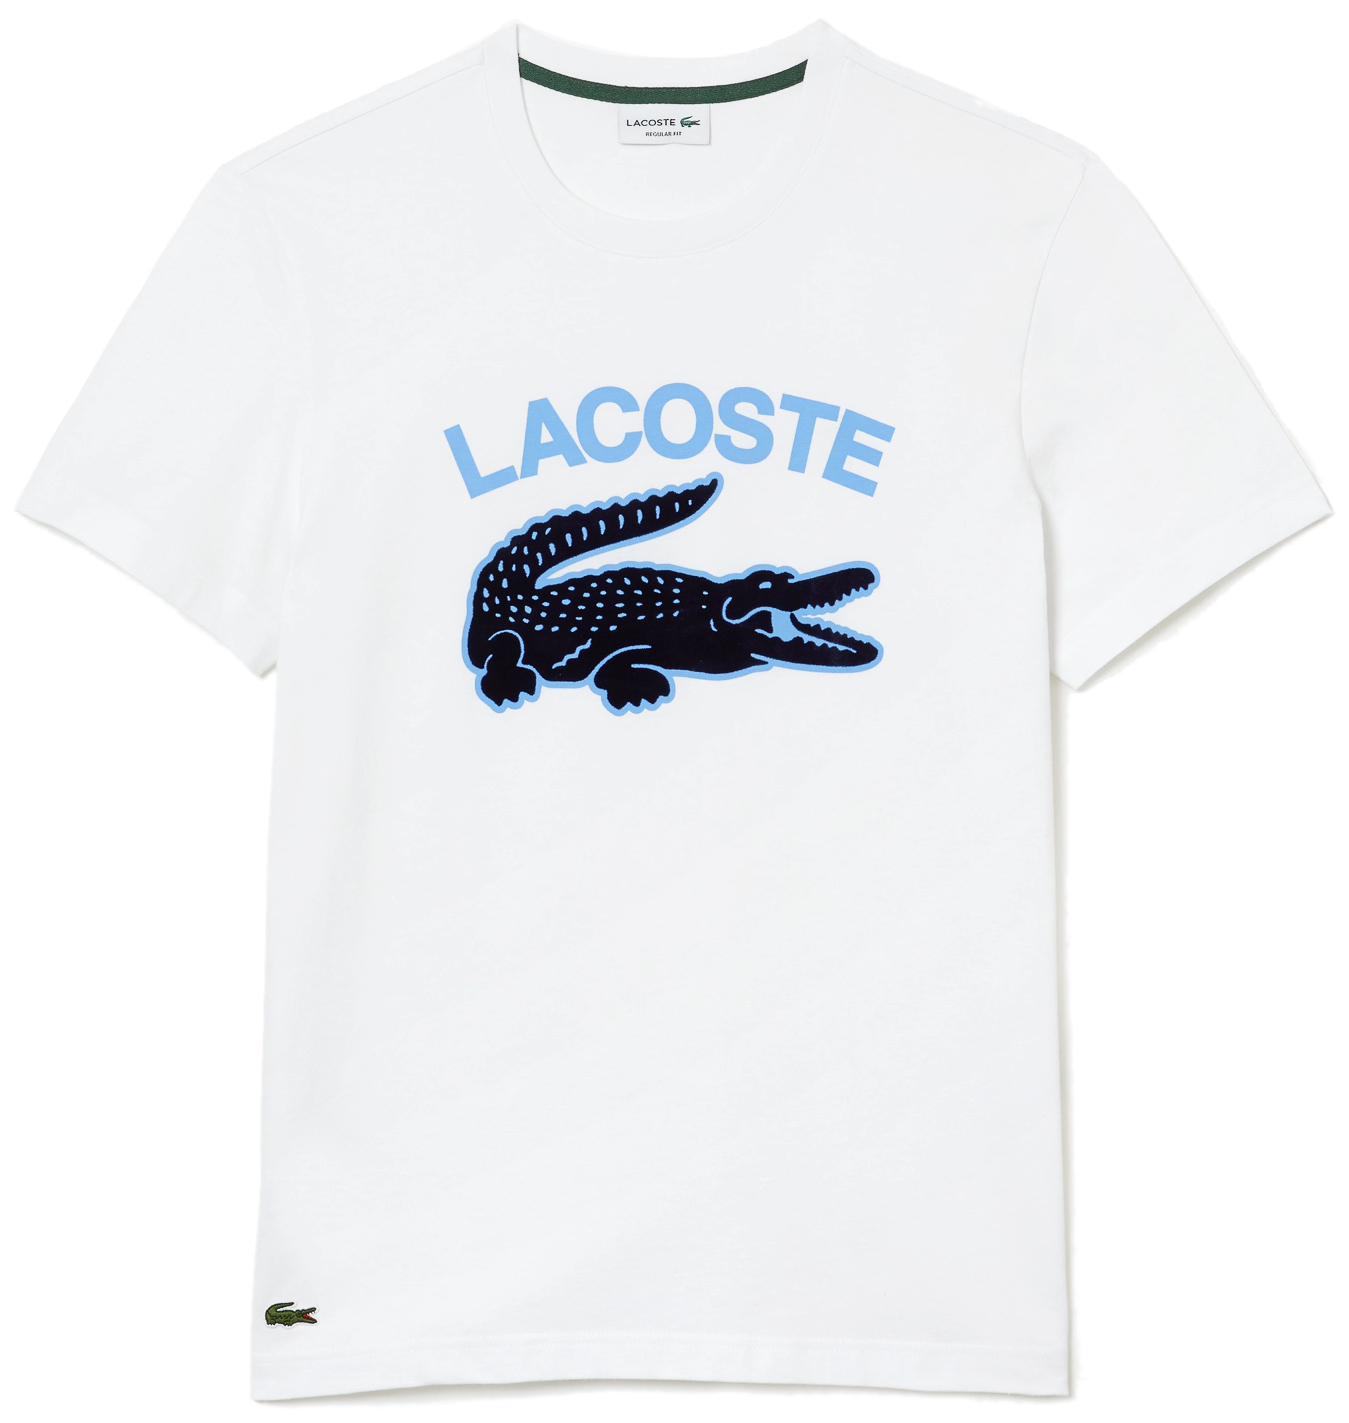  Camiseta Lacoste para hombre de manga corta, con